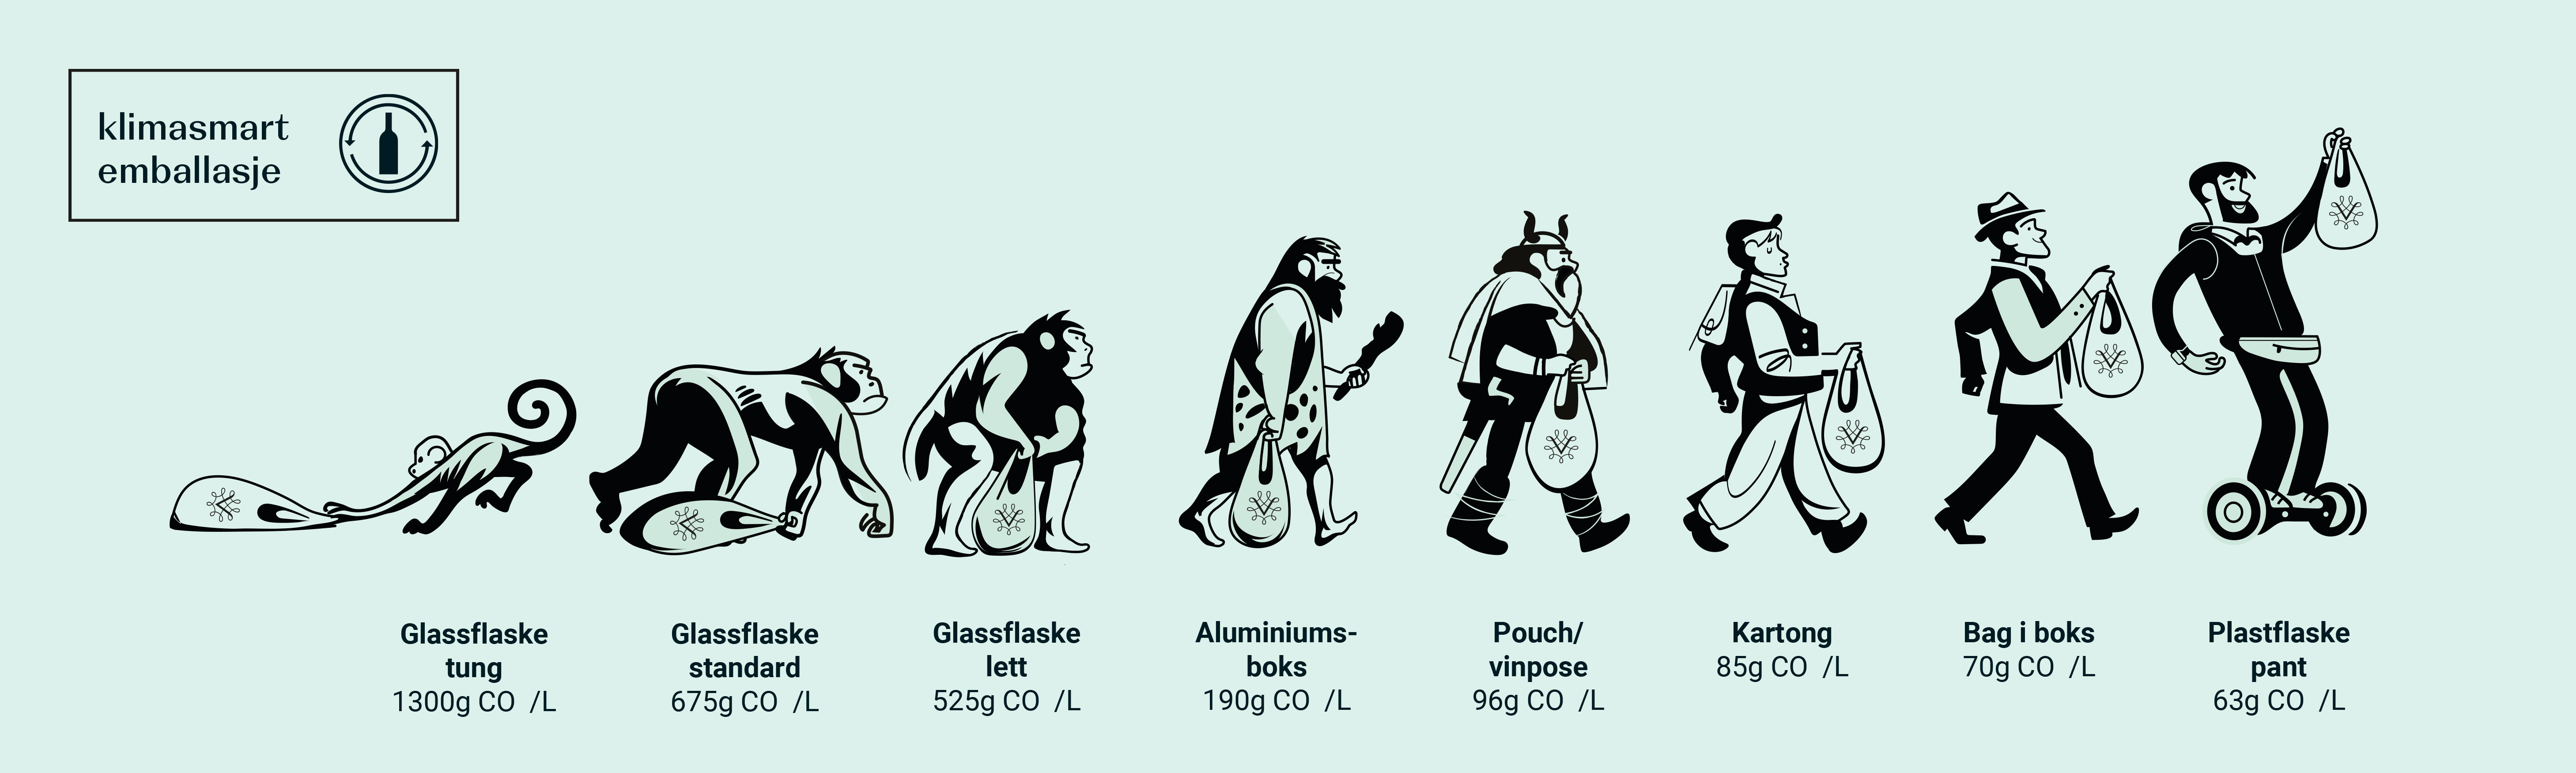 Humoristisk tegning av evolusjonen fra ape med tung pose, til moderne mann med lett pose.